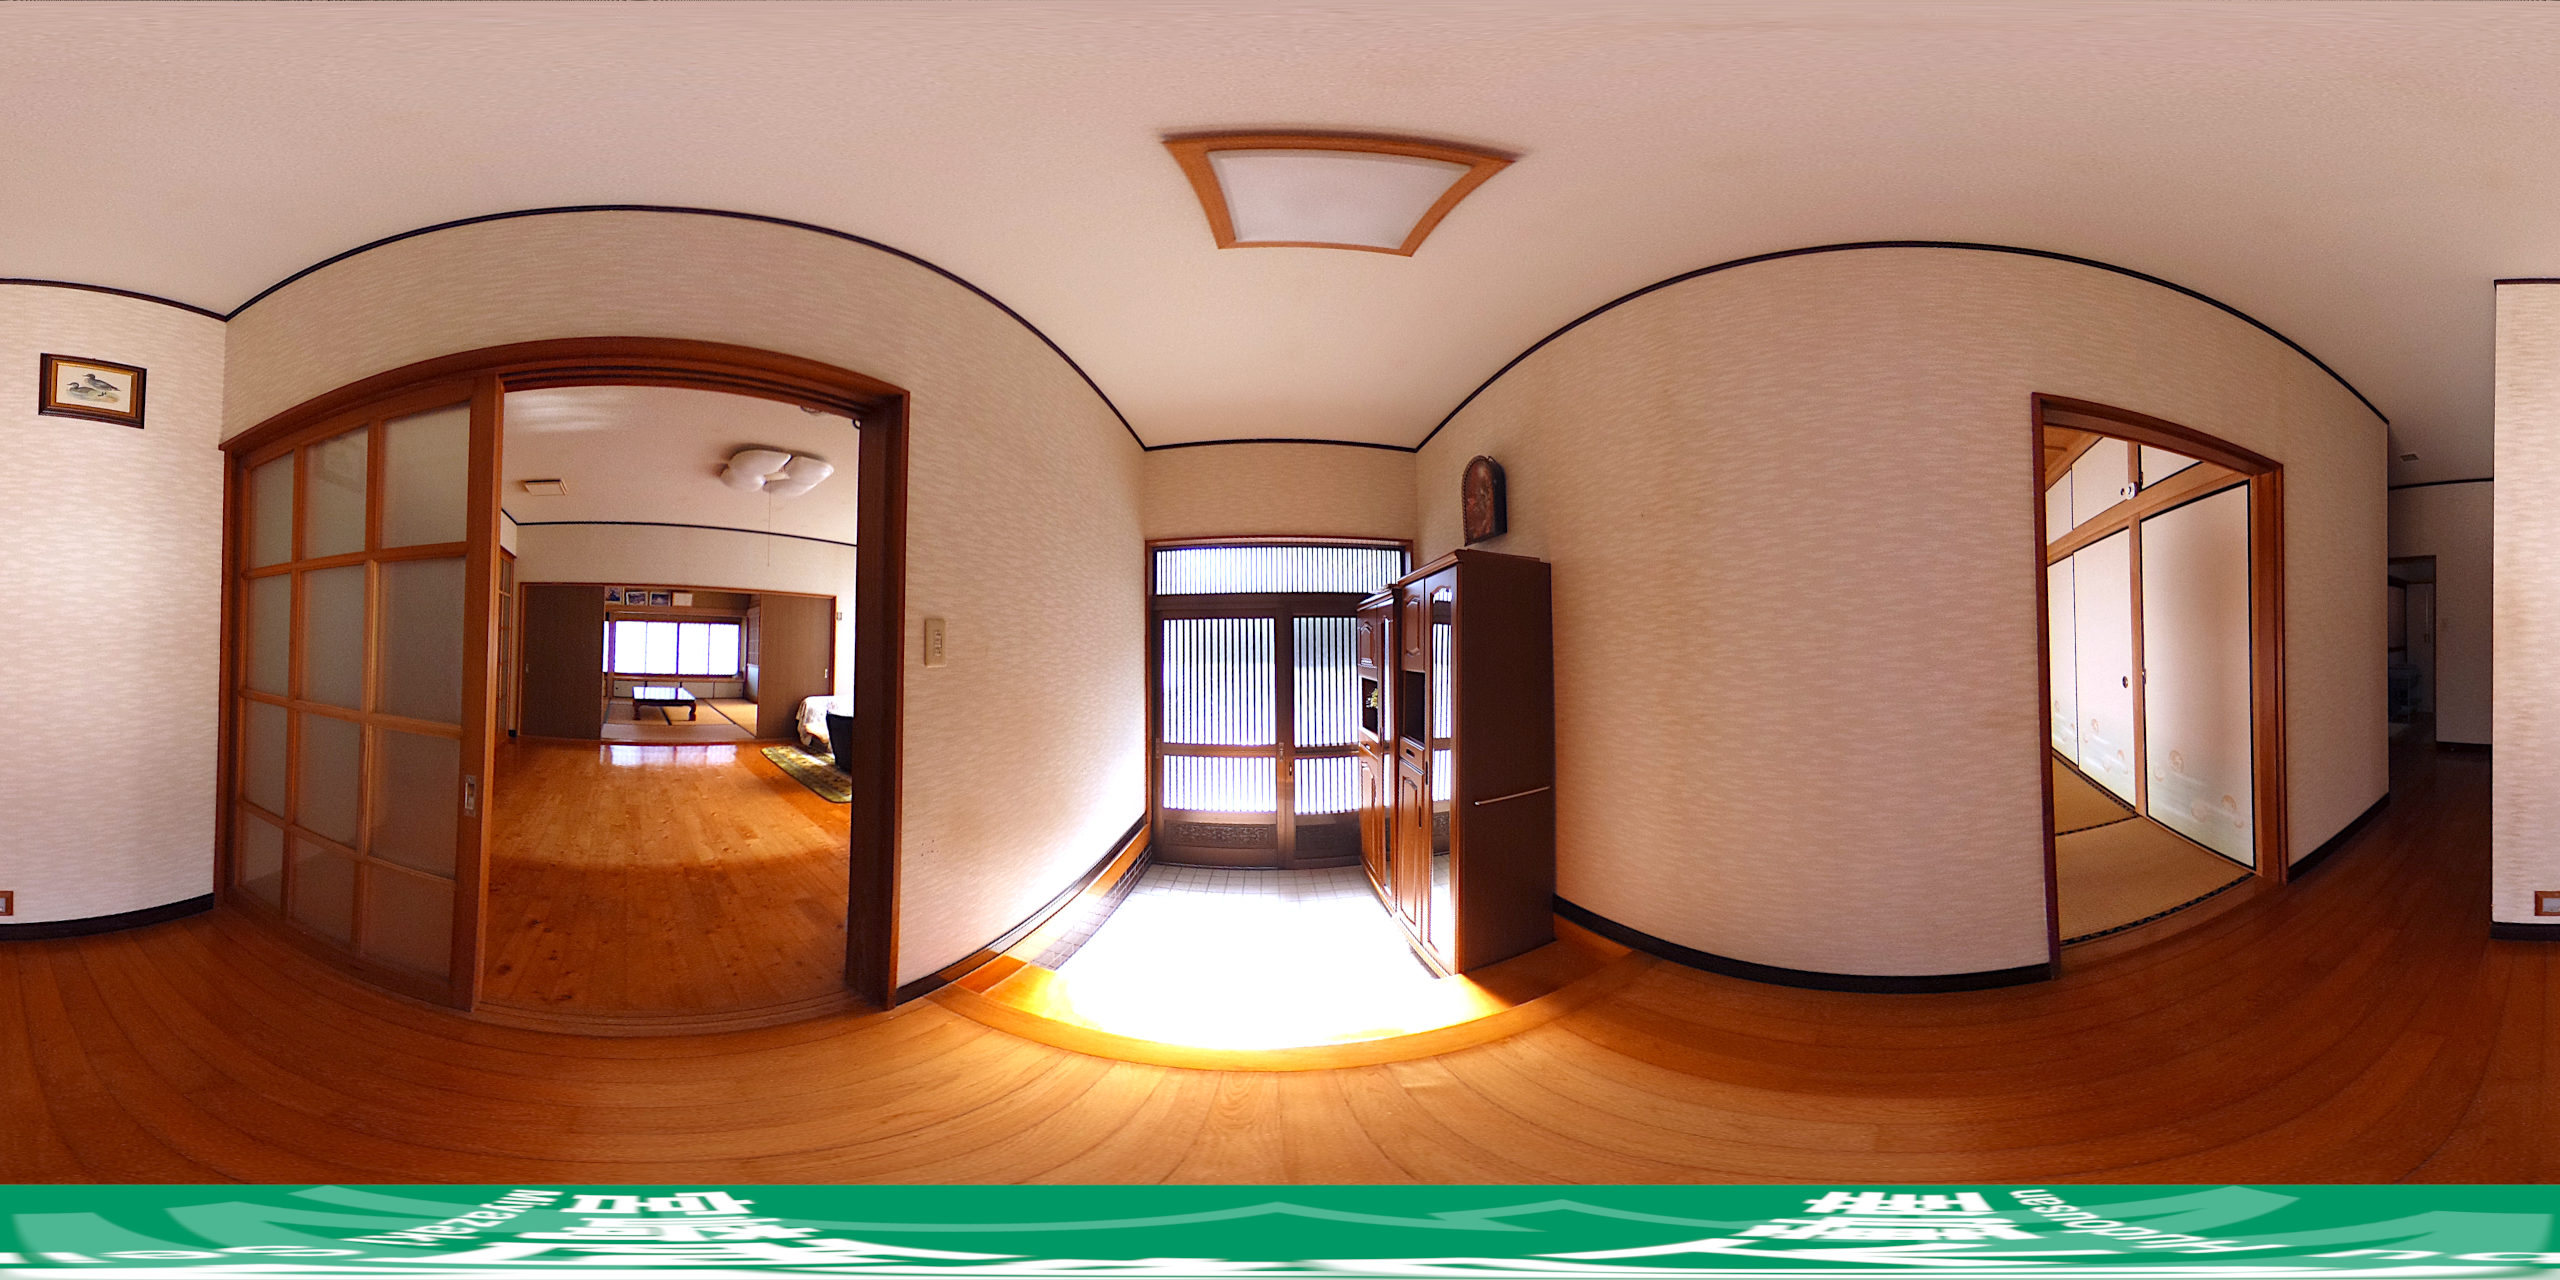 【玄関ホール】360度パノラマビュー。マウスやタッチ操作で全方位を自由に見渡せます。